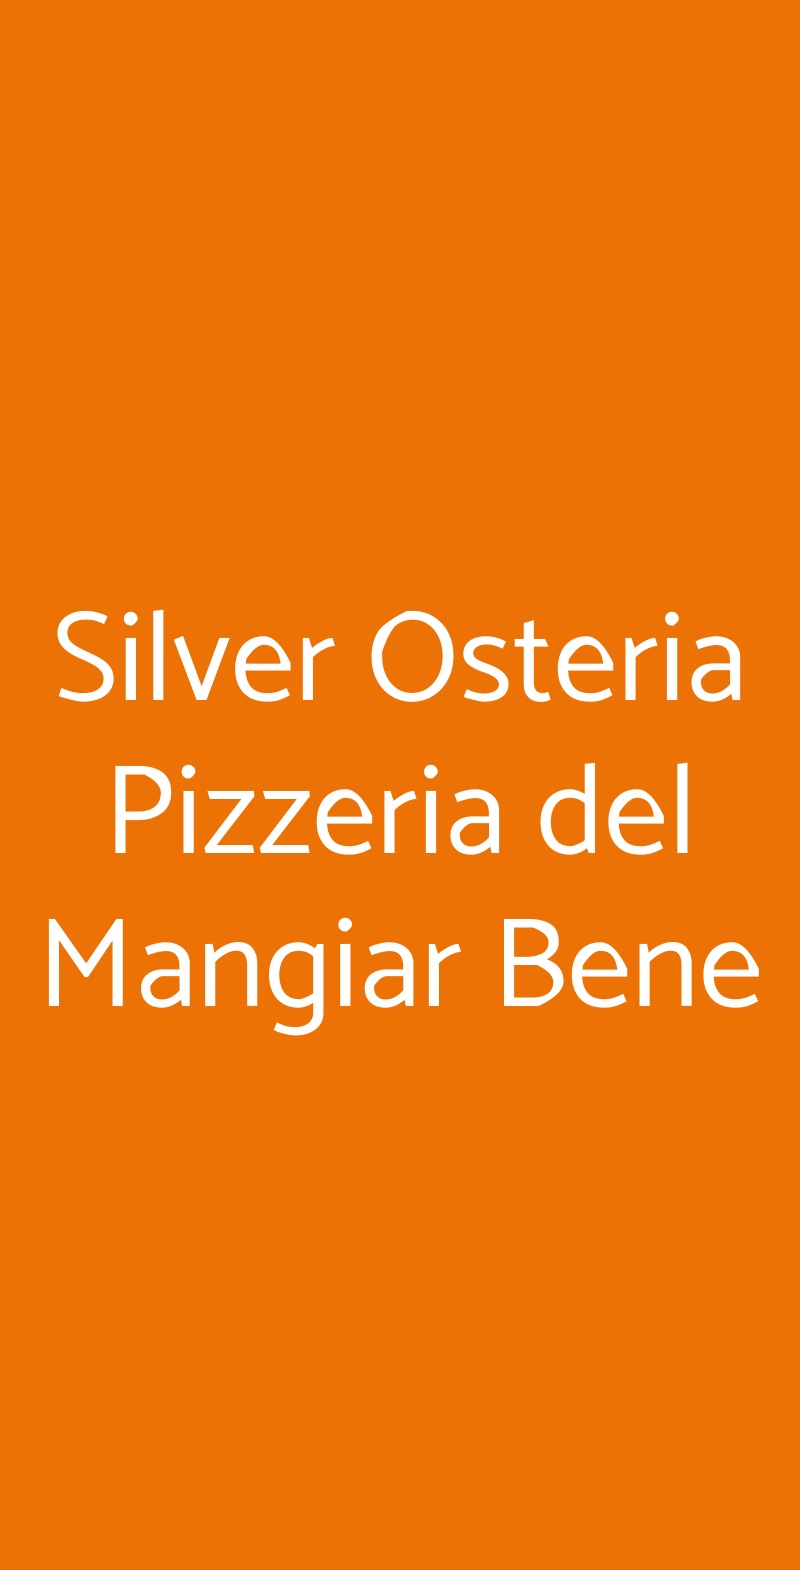 Silver Osteria Pizzeria del Mangiar Bene Spoleto menù 1 pagina